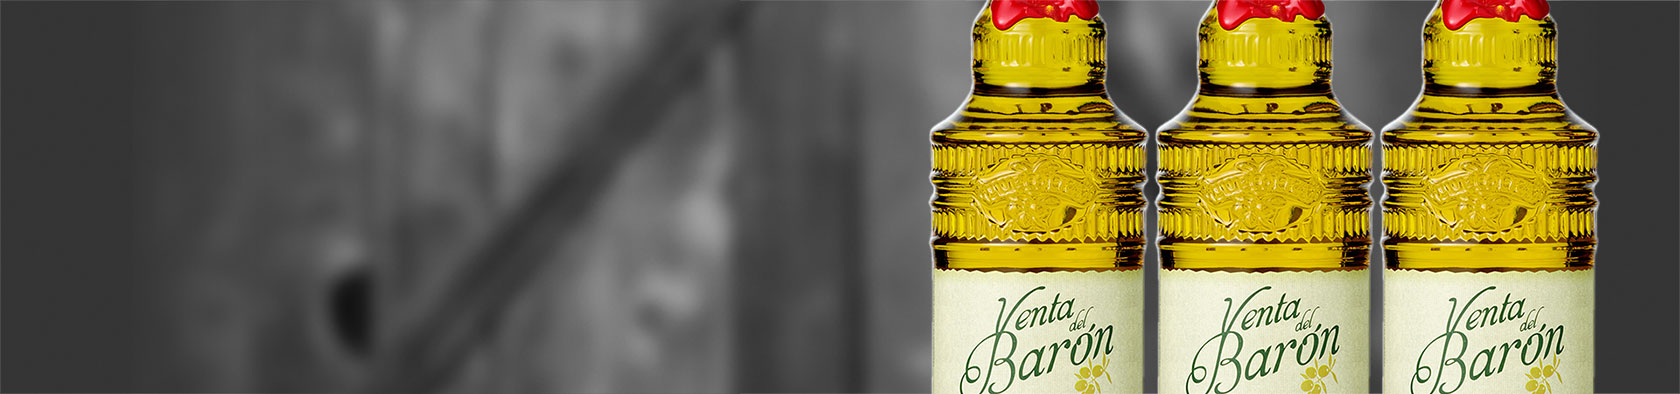 los mejores aceites de oliva baron